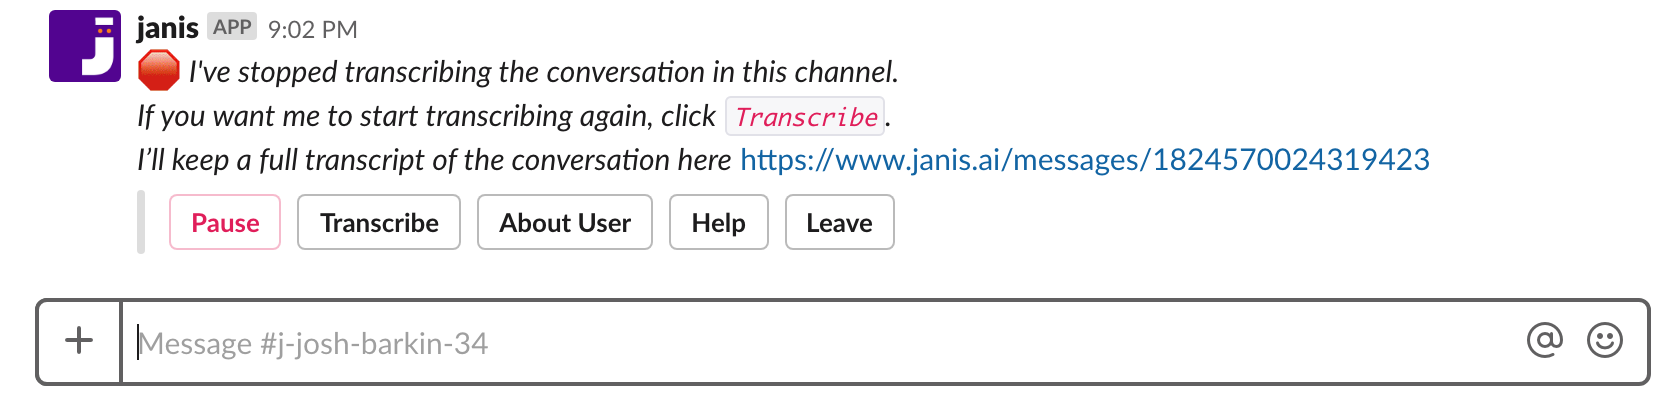 Janis Dialogflow alerts